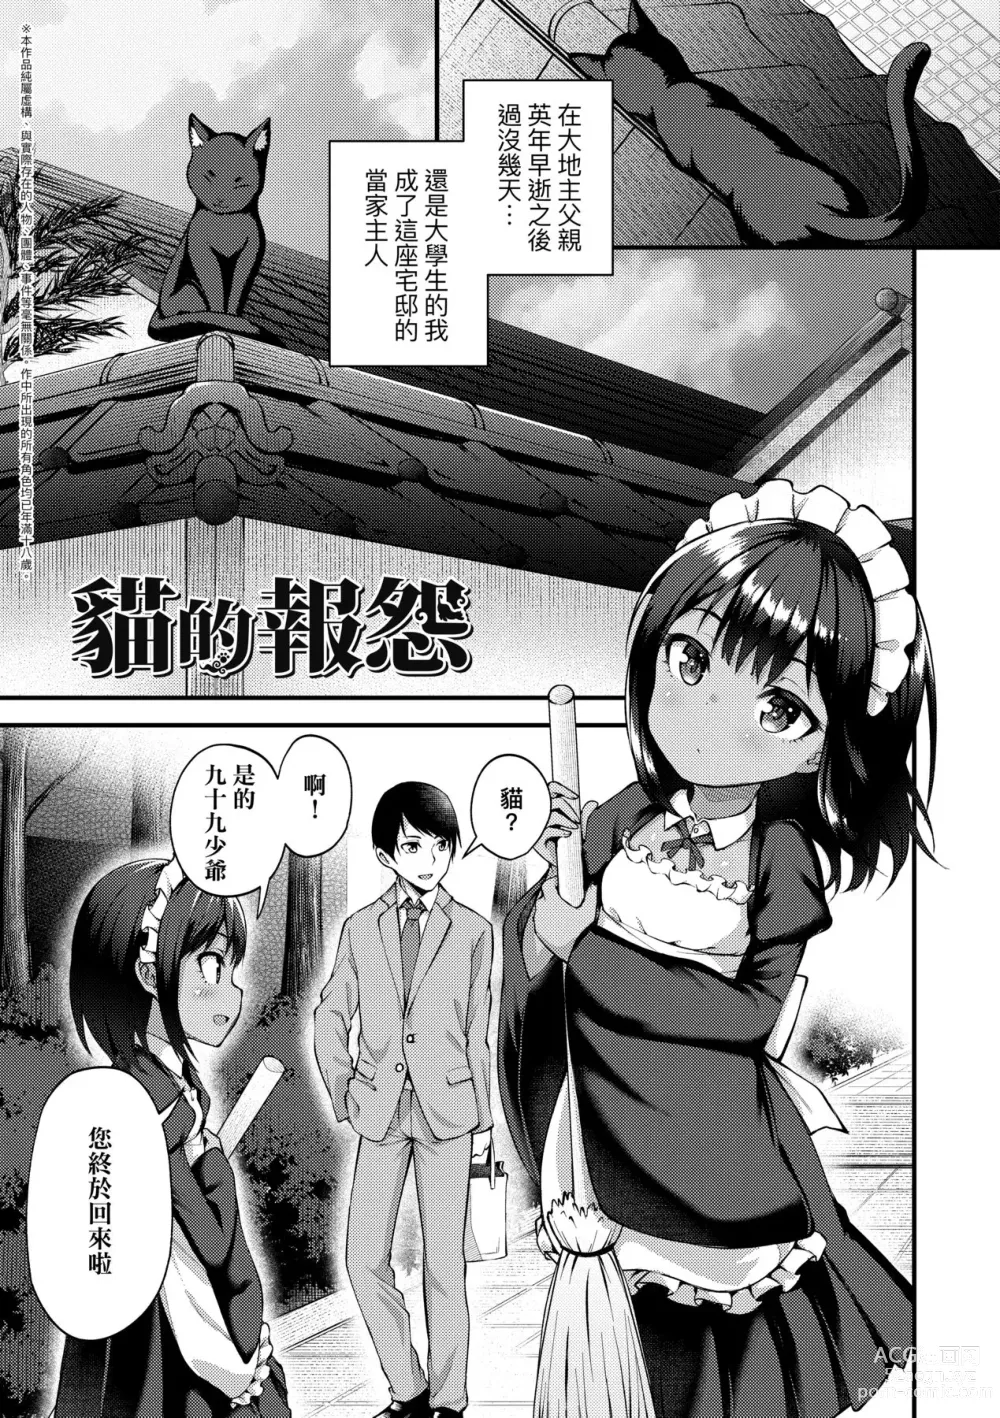 Page 6 of manga Chojyu Giga (decensored)